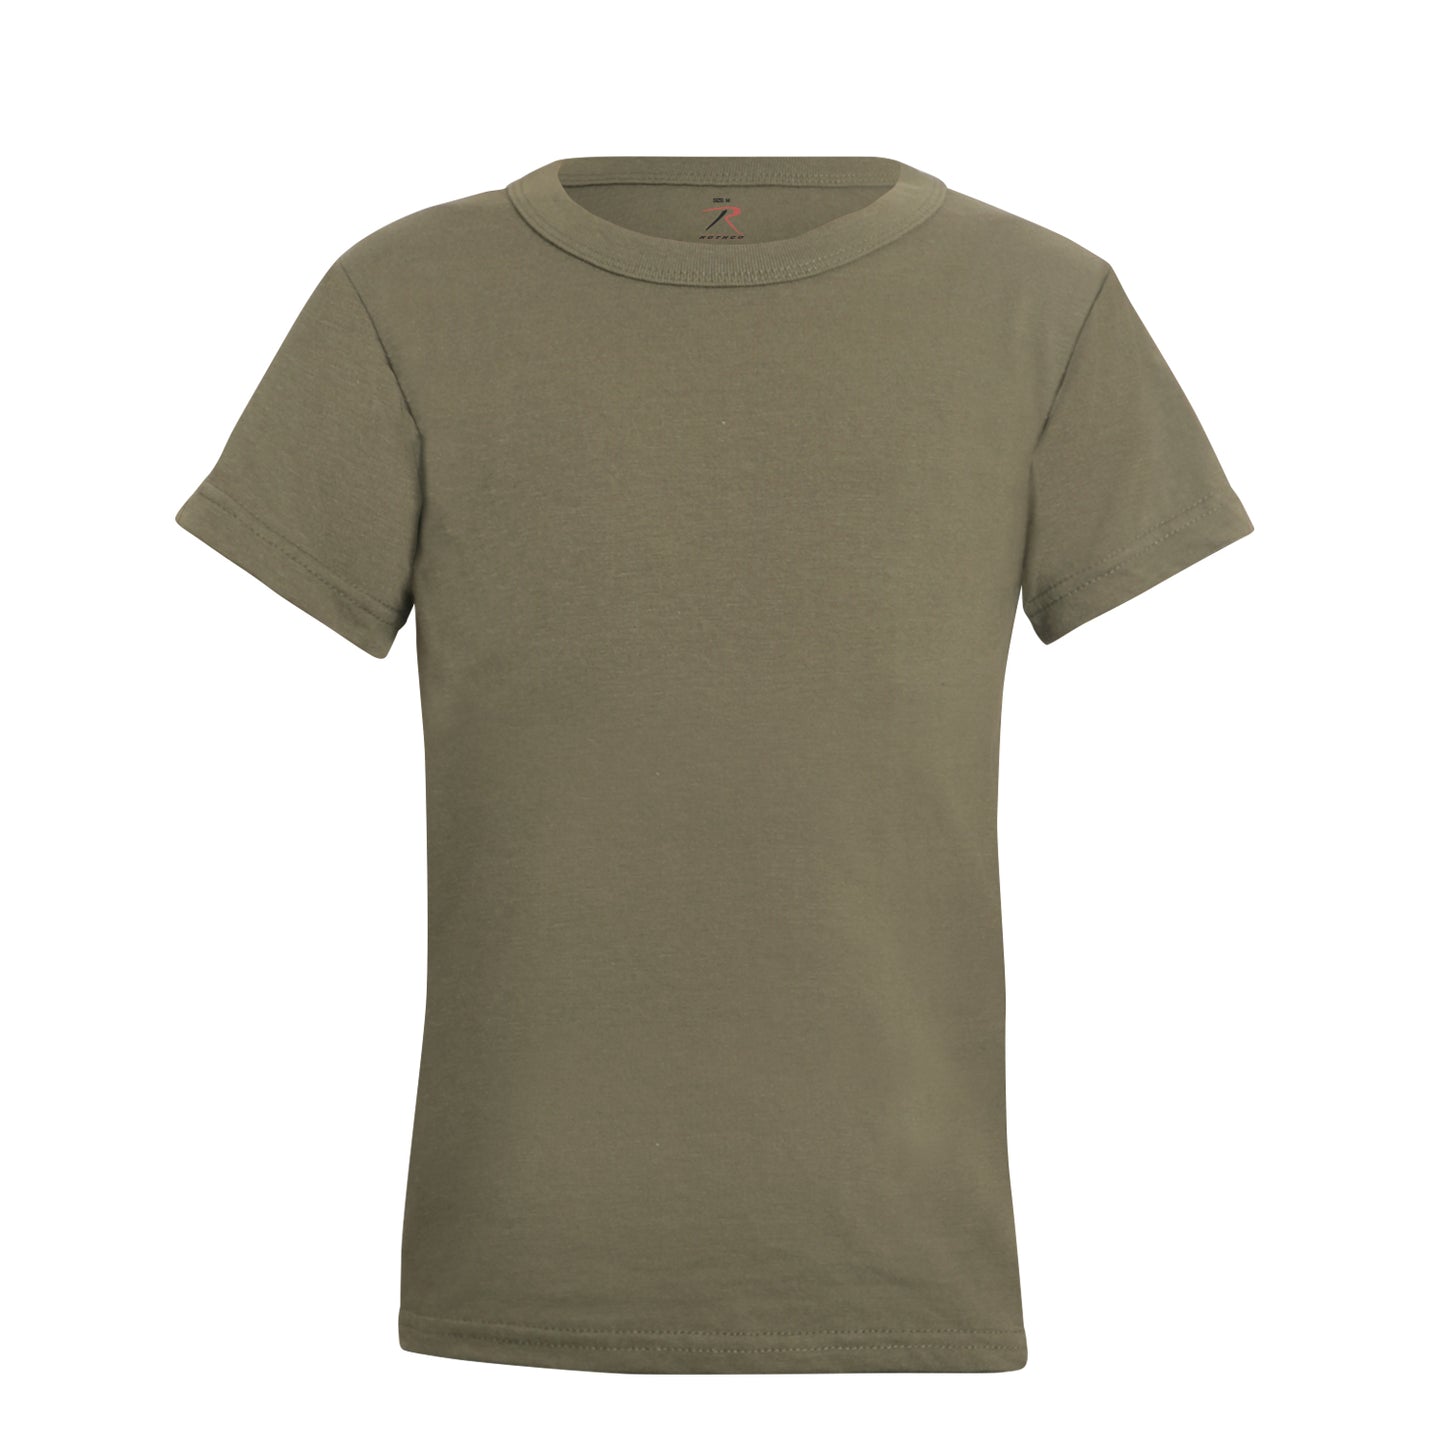 Milspec Kids T-Shirt Kids Shirts MilTac Tactical Military Outdoor Gear Australia